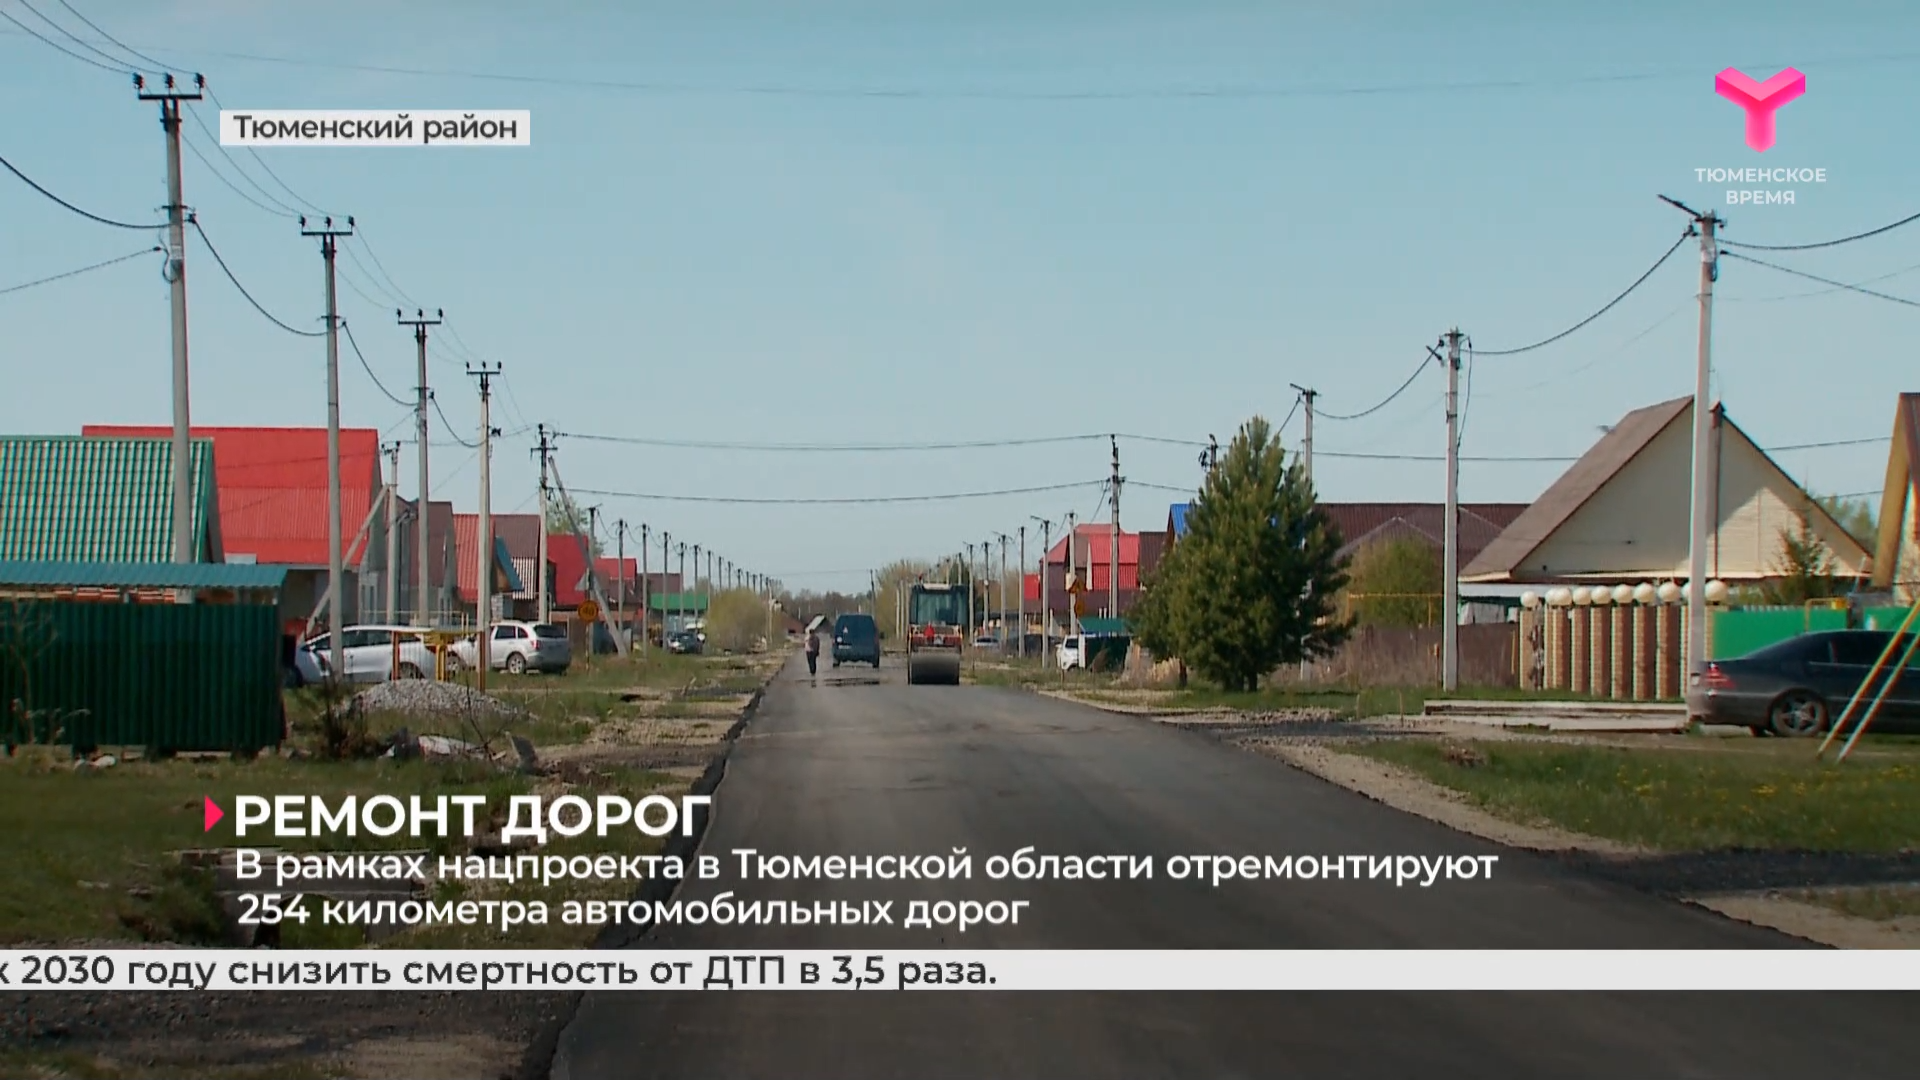 В рамках нацпроекта в Тюменской области отремонтируют 254 километра автомобильных дорог